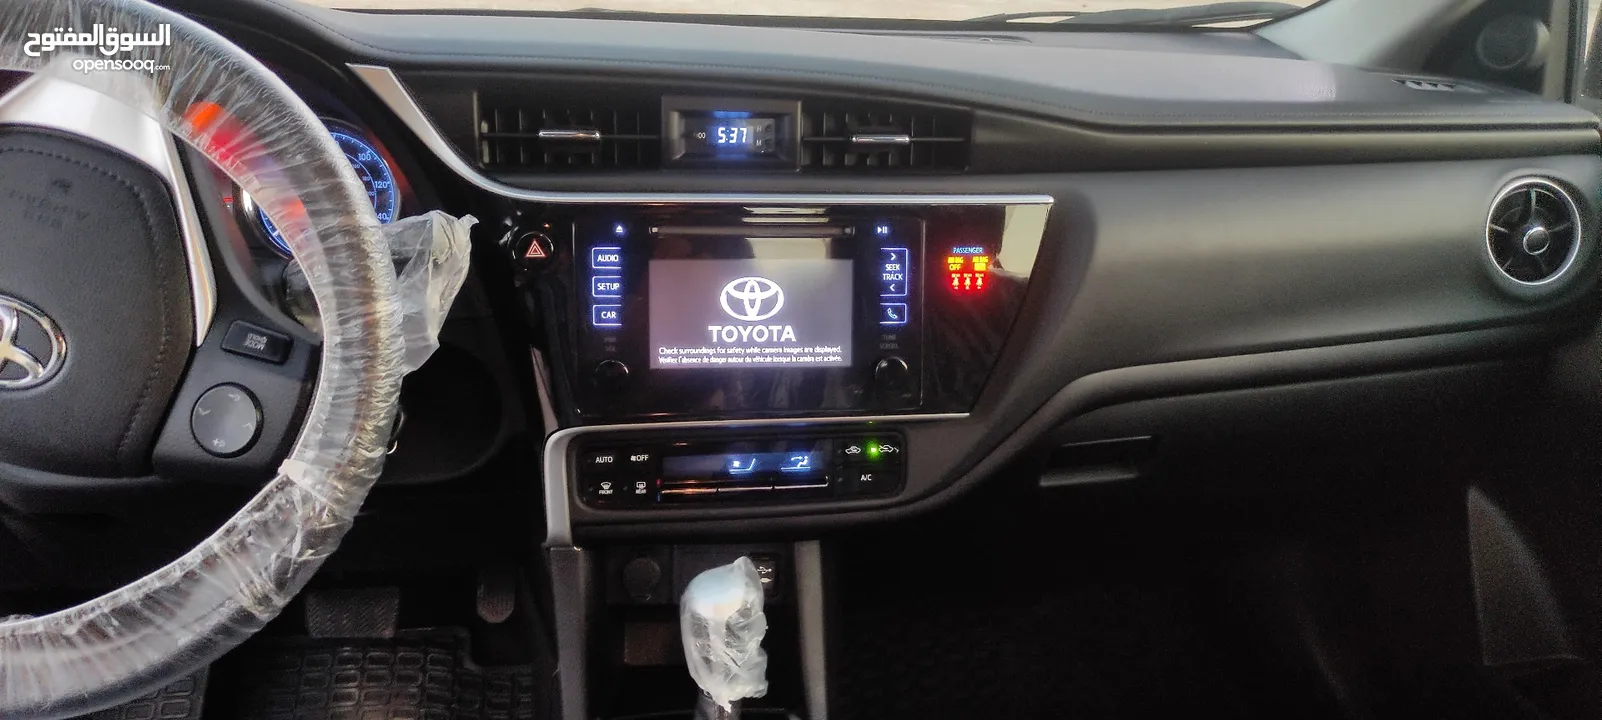 سيارة تويوتا كورولا امريكي 2019   شبه جديد كرت على الزيرو